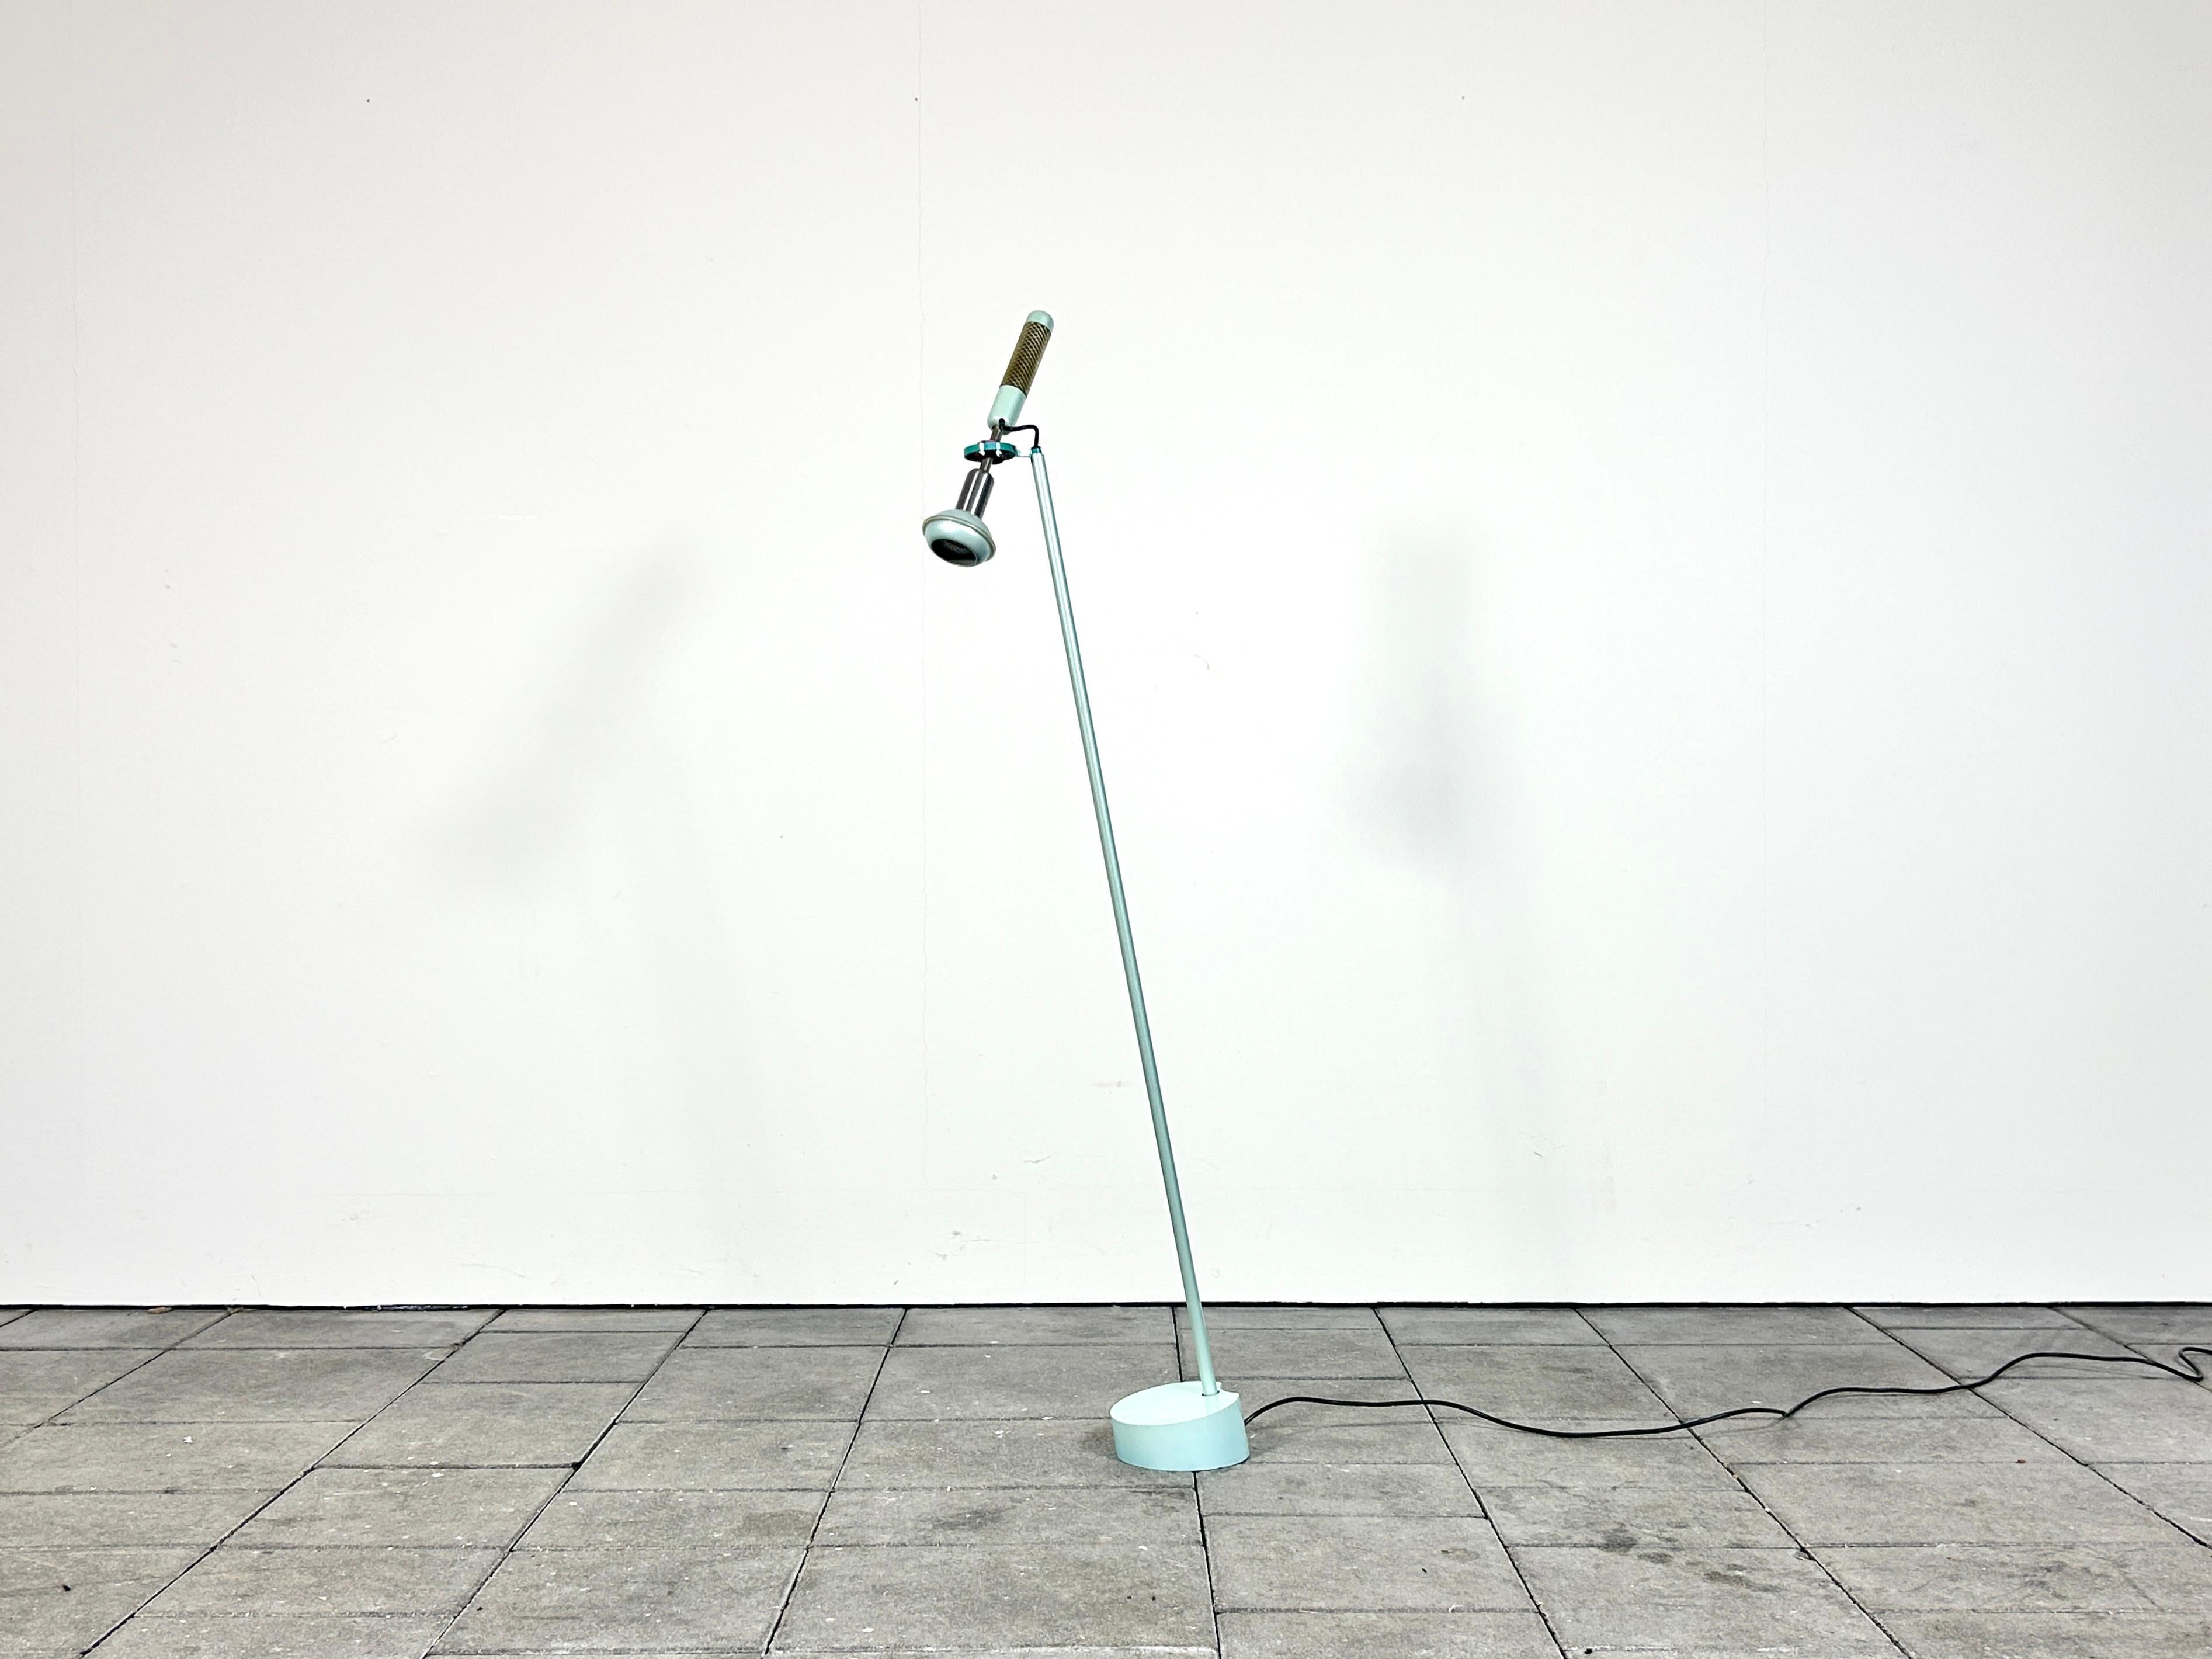 Postmoderne Stehleuchte Grip, entworfen von Achille Castiglioni im Jahr 1985.

hergestellt von Flos, Italien. 

Lackierter Stahl und Aluminium, Kunststoff. Mit Maker Bedge.

Die Leuchte erzeugt ein punktuelles Licht und ist perfekt geeignet, um eine